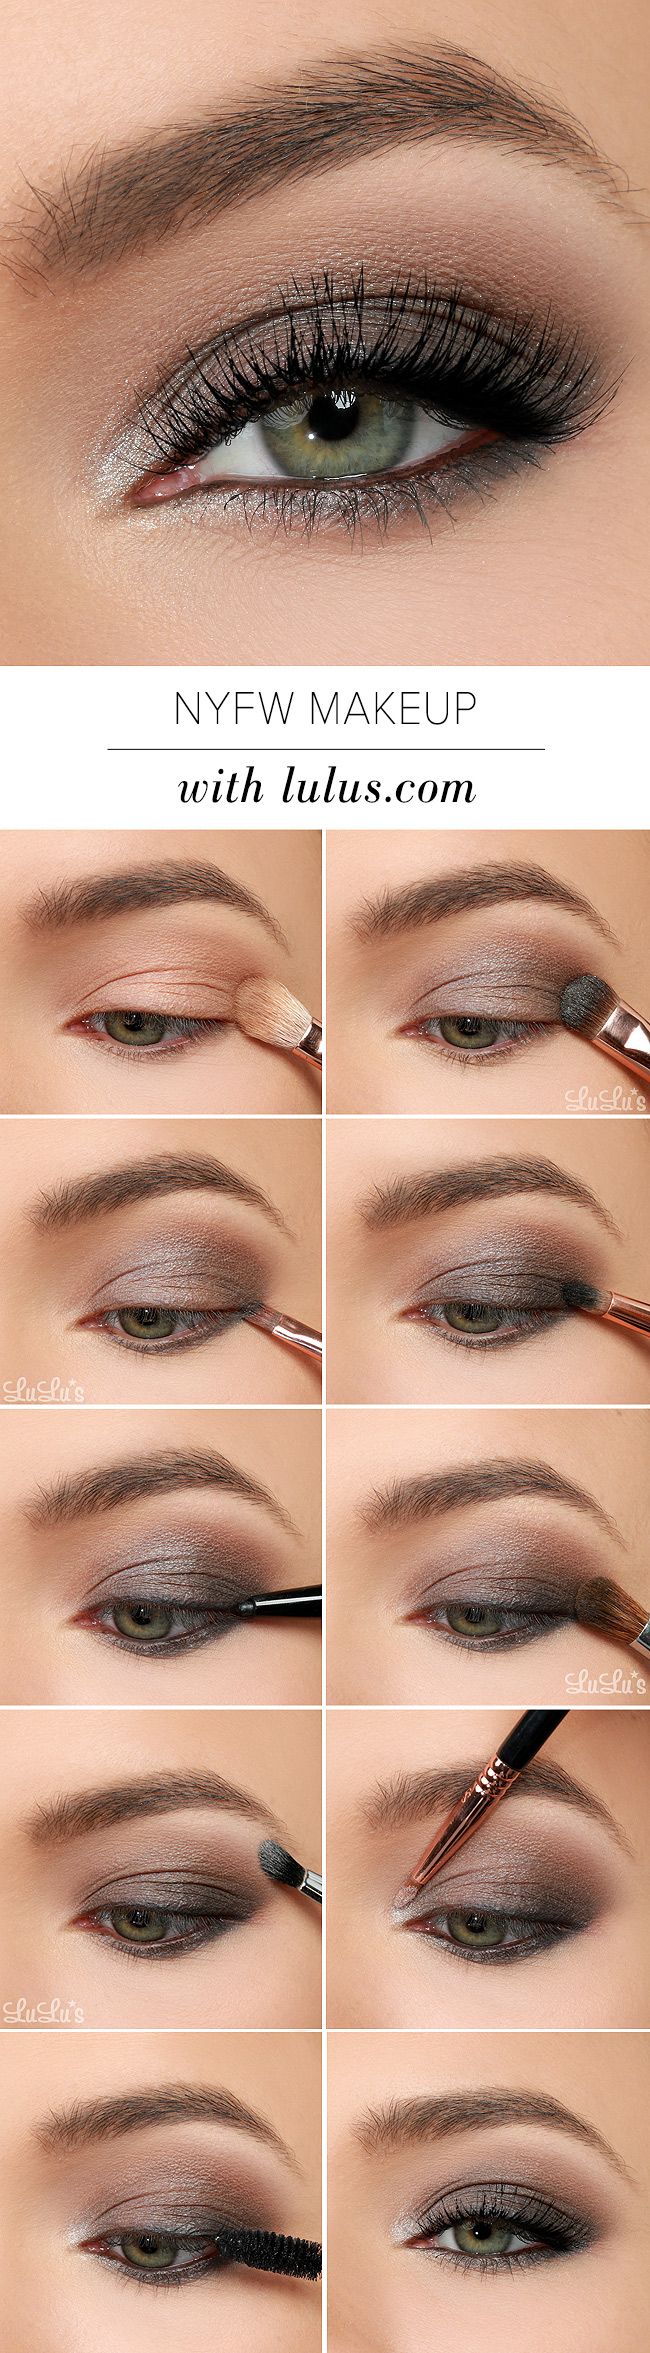 step-by-step makeup tutorial